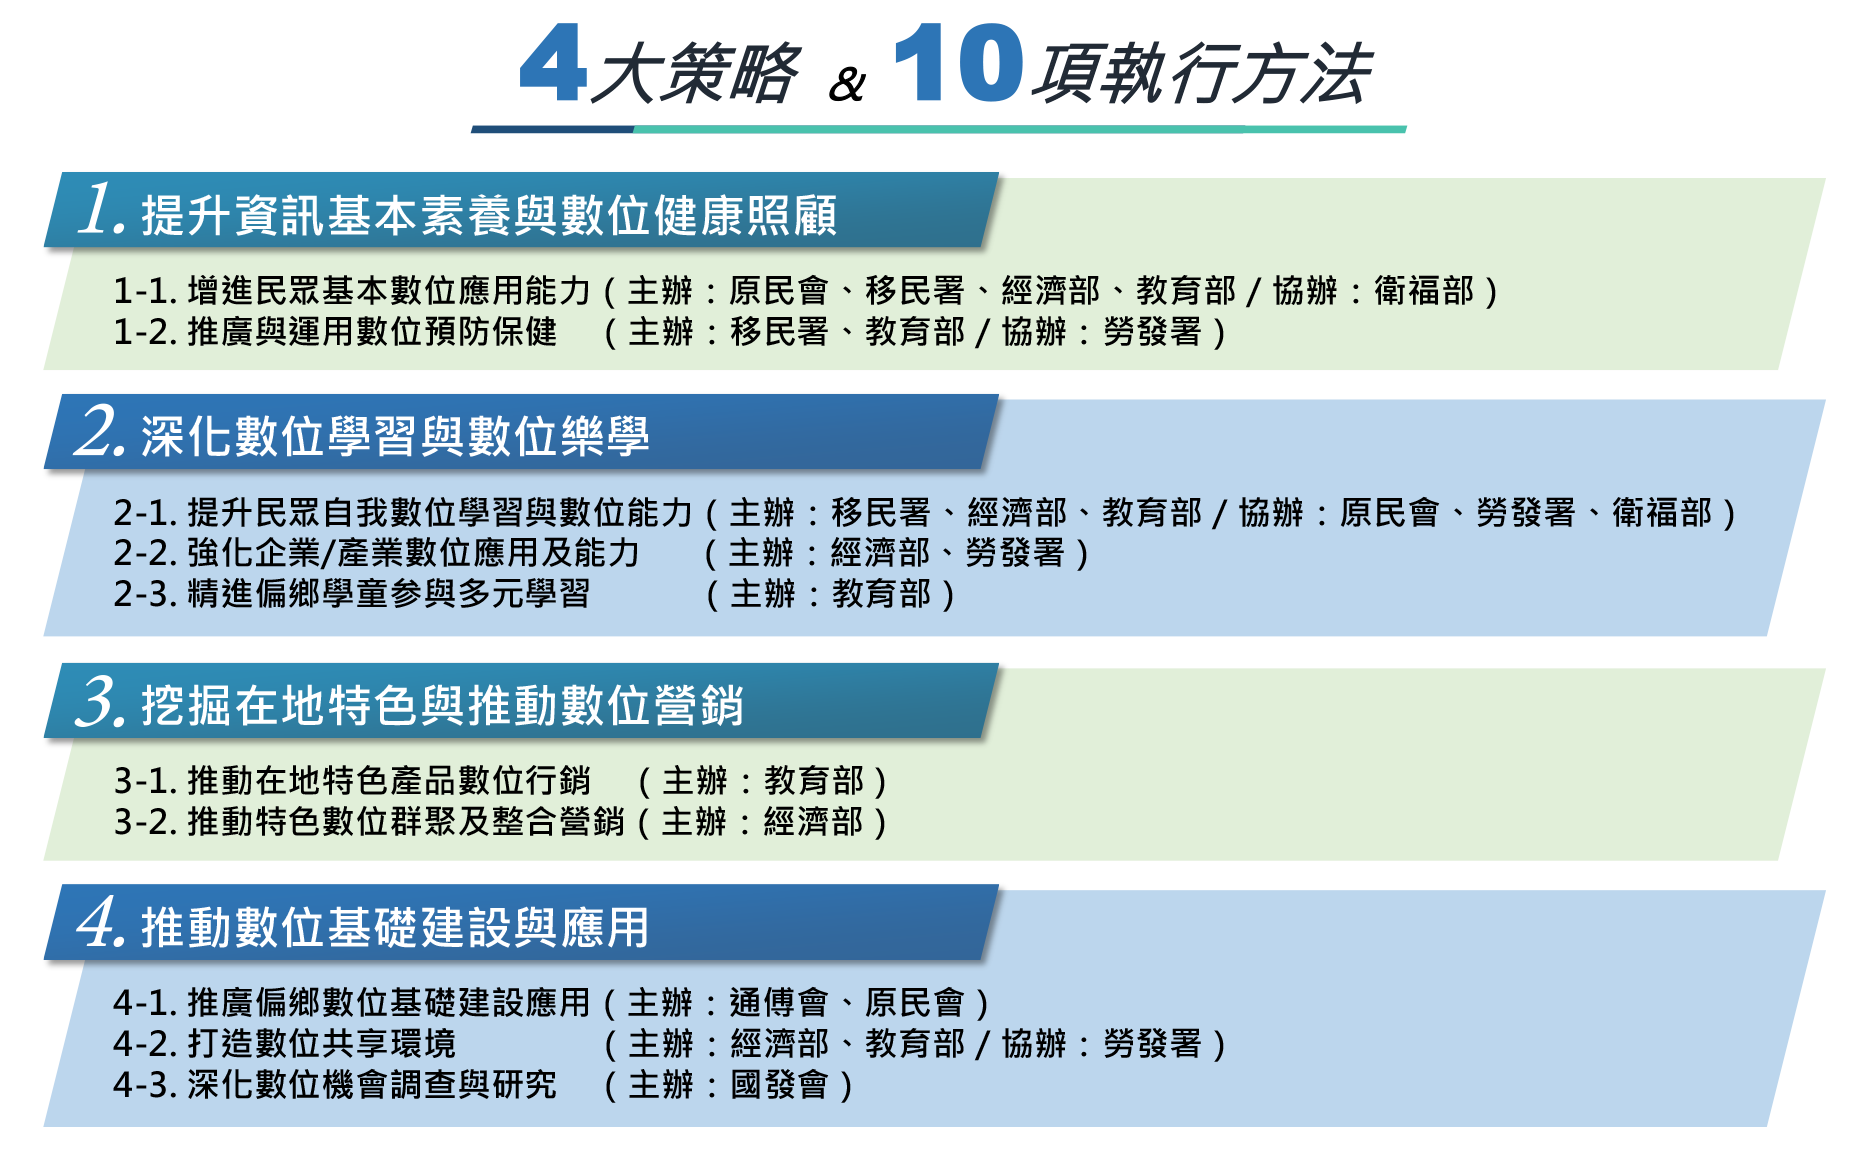 Theo điều tra của Liên minh Phúc lợi trẻ em với 303 trường tiểu học tại vùng sâu vùng xa trên toàn Đài Loan phát hiện, có 60.7% các trường cần các giới chức bên ngoài trợ cấp thiết bị để học tập, 53.1% trường cần hỗ trợ mạng Internet. (Nguồn ảnh: trích dẫn từ website偏鄉數位應用精進計畫)